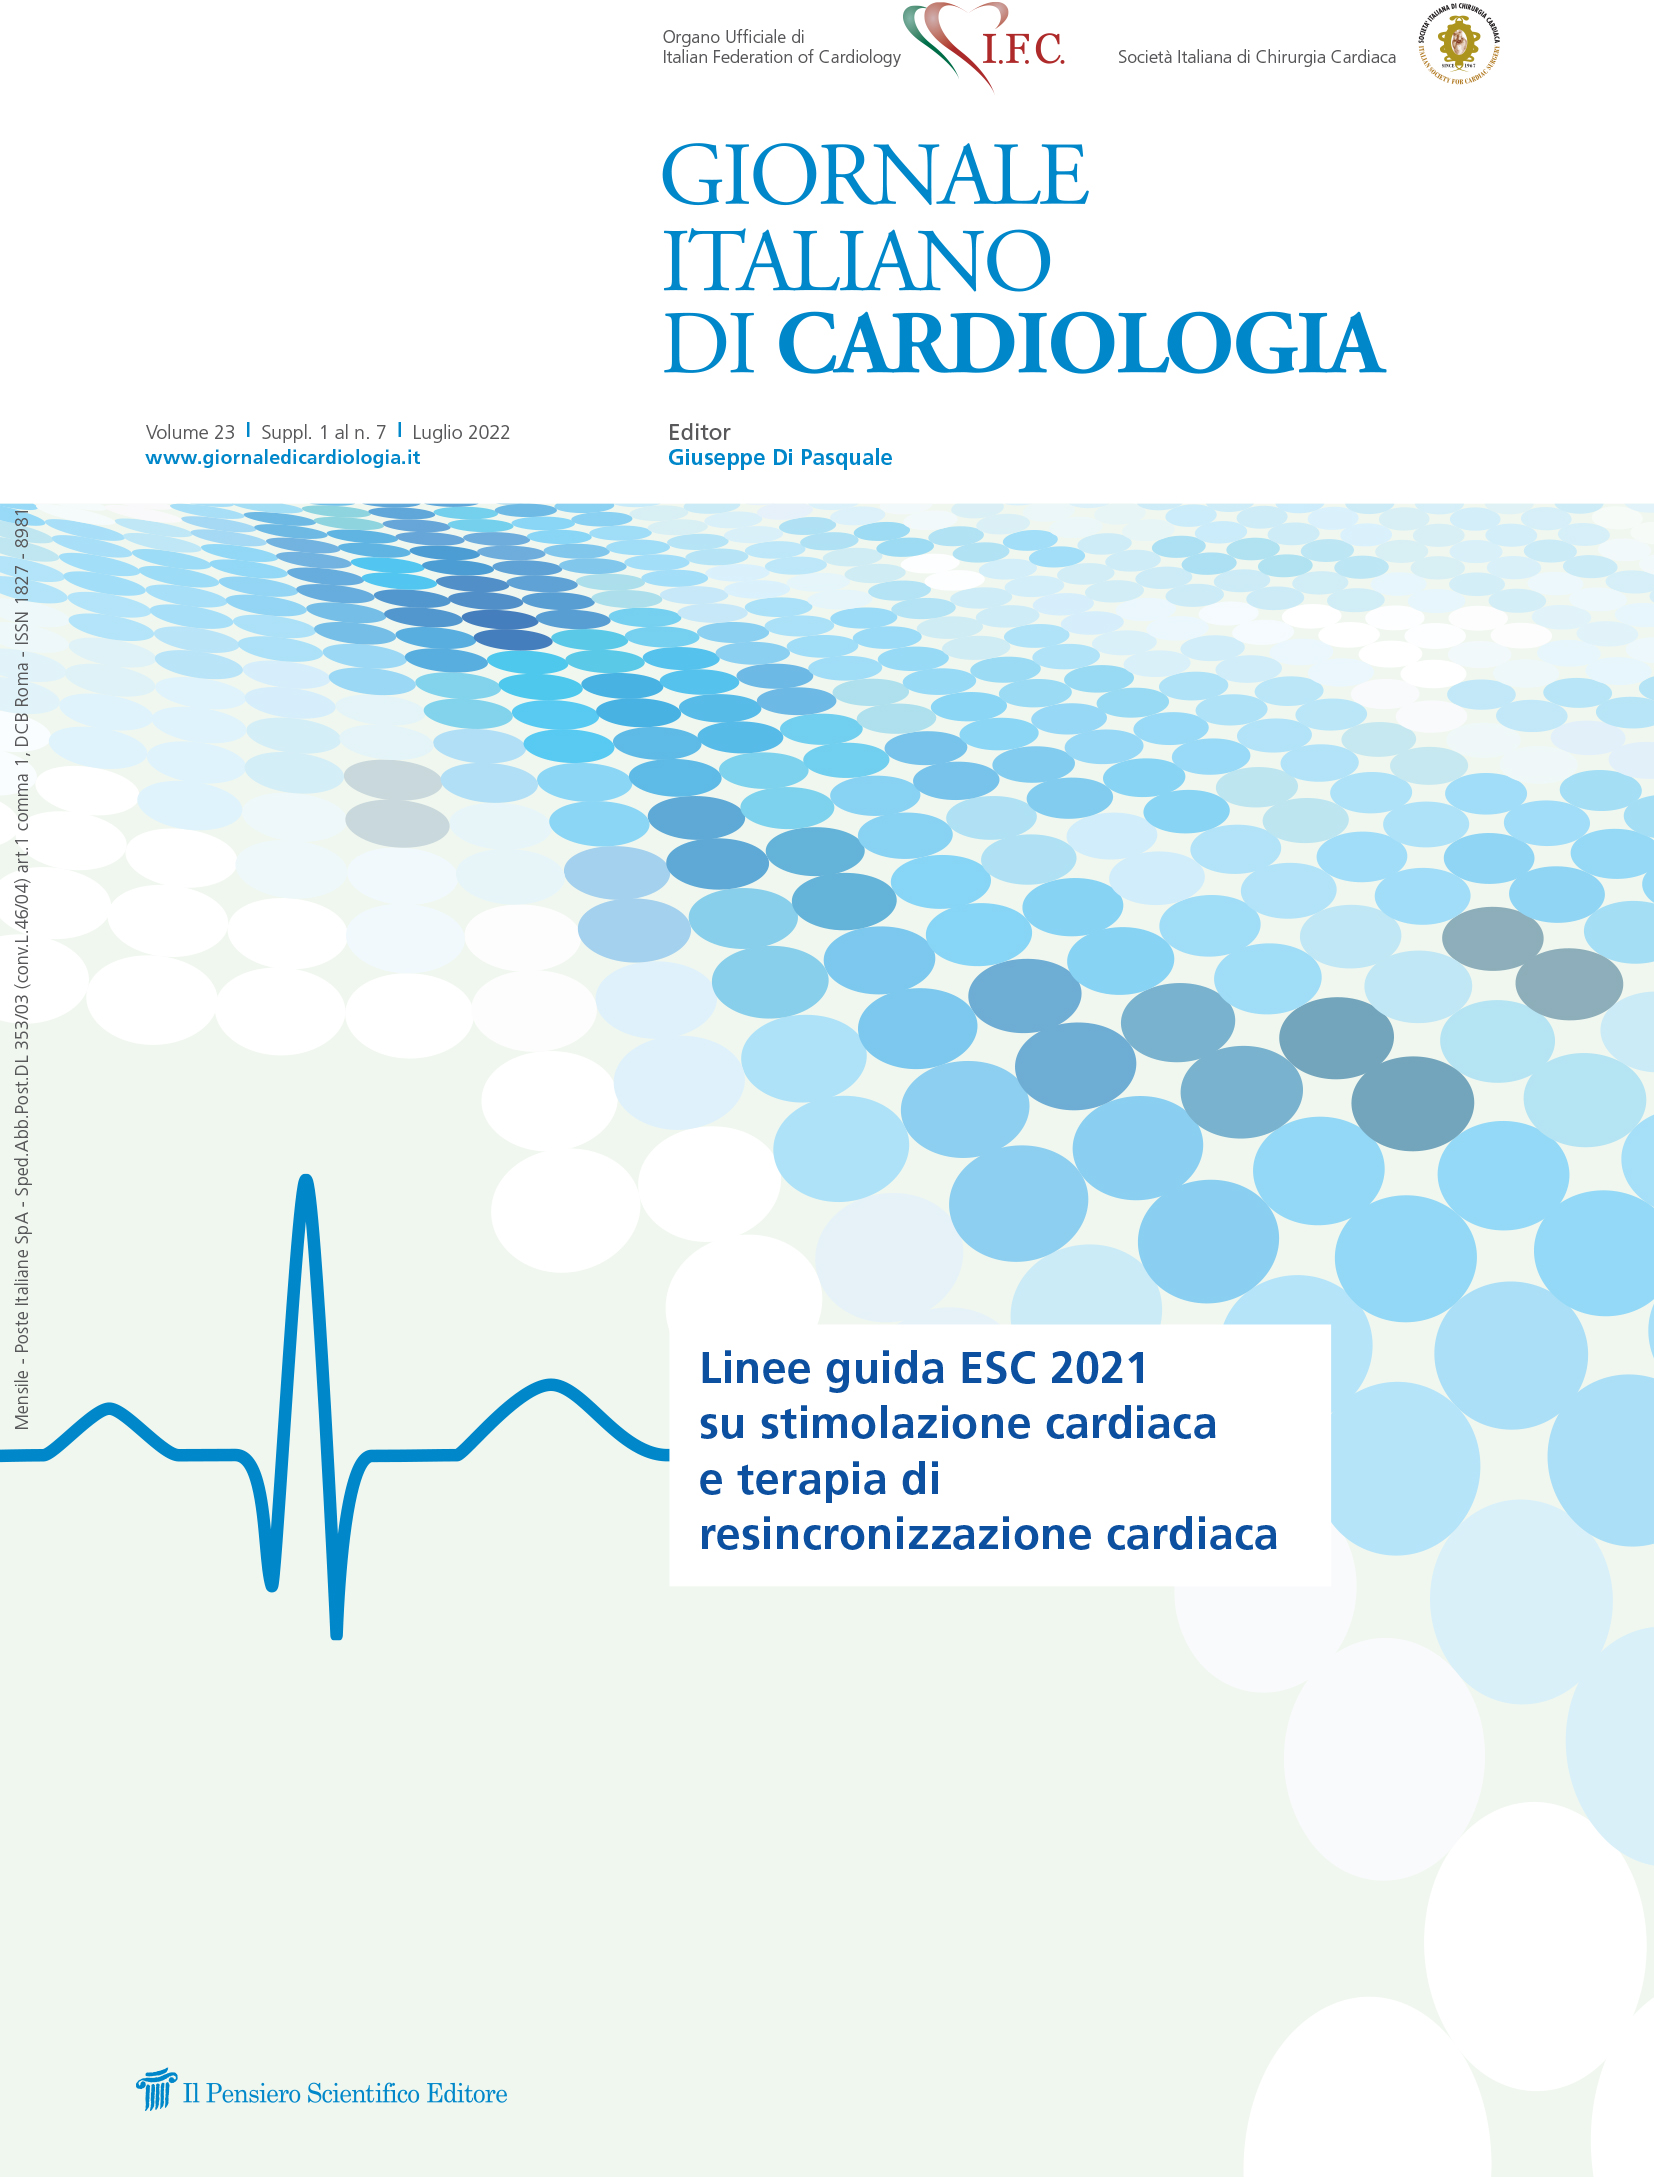 2022 Vol. 23 Suppl. 1 al N. 7 LuglioLinee guida ESC 2021
su stimolazione cardiaca
e terapia di
resincronizzazione cardiaca